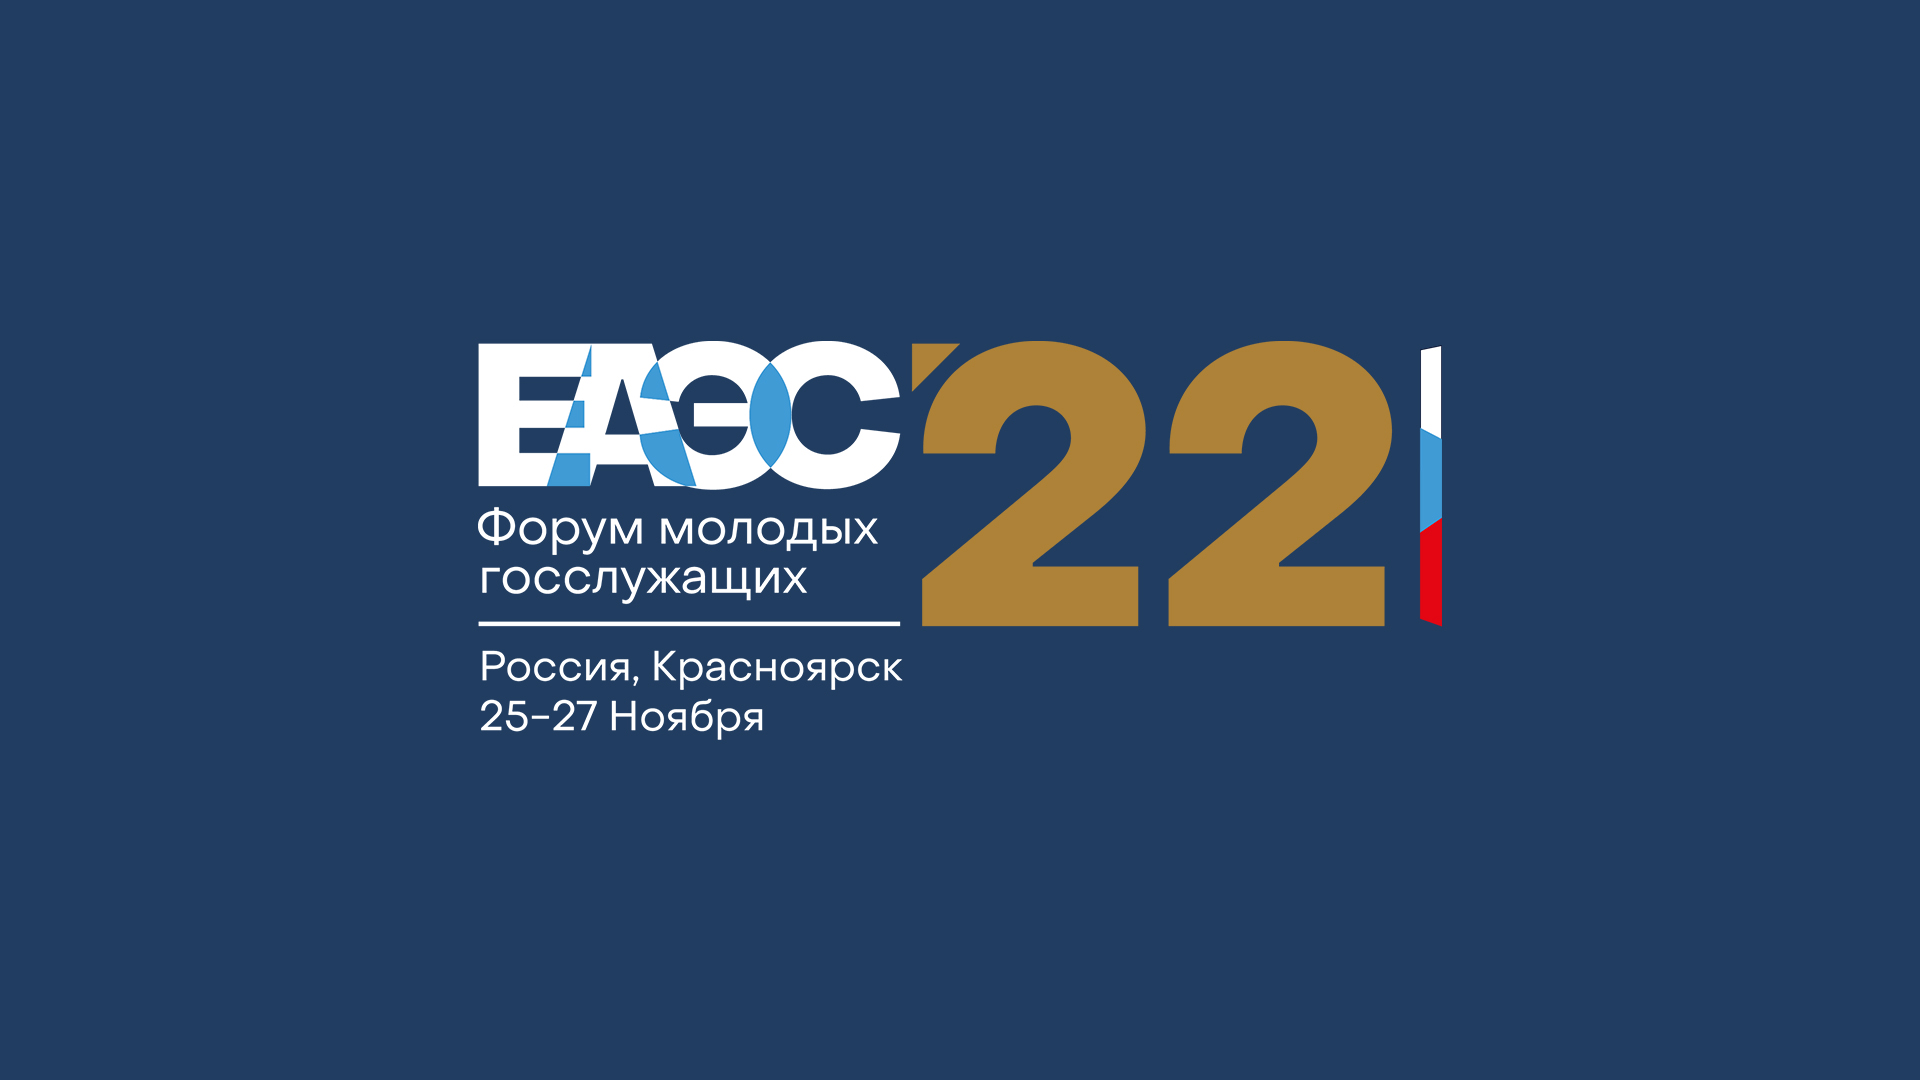 Фирменный стиль Форум ЕАЭС 2022